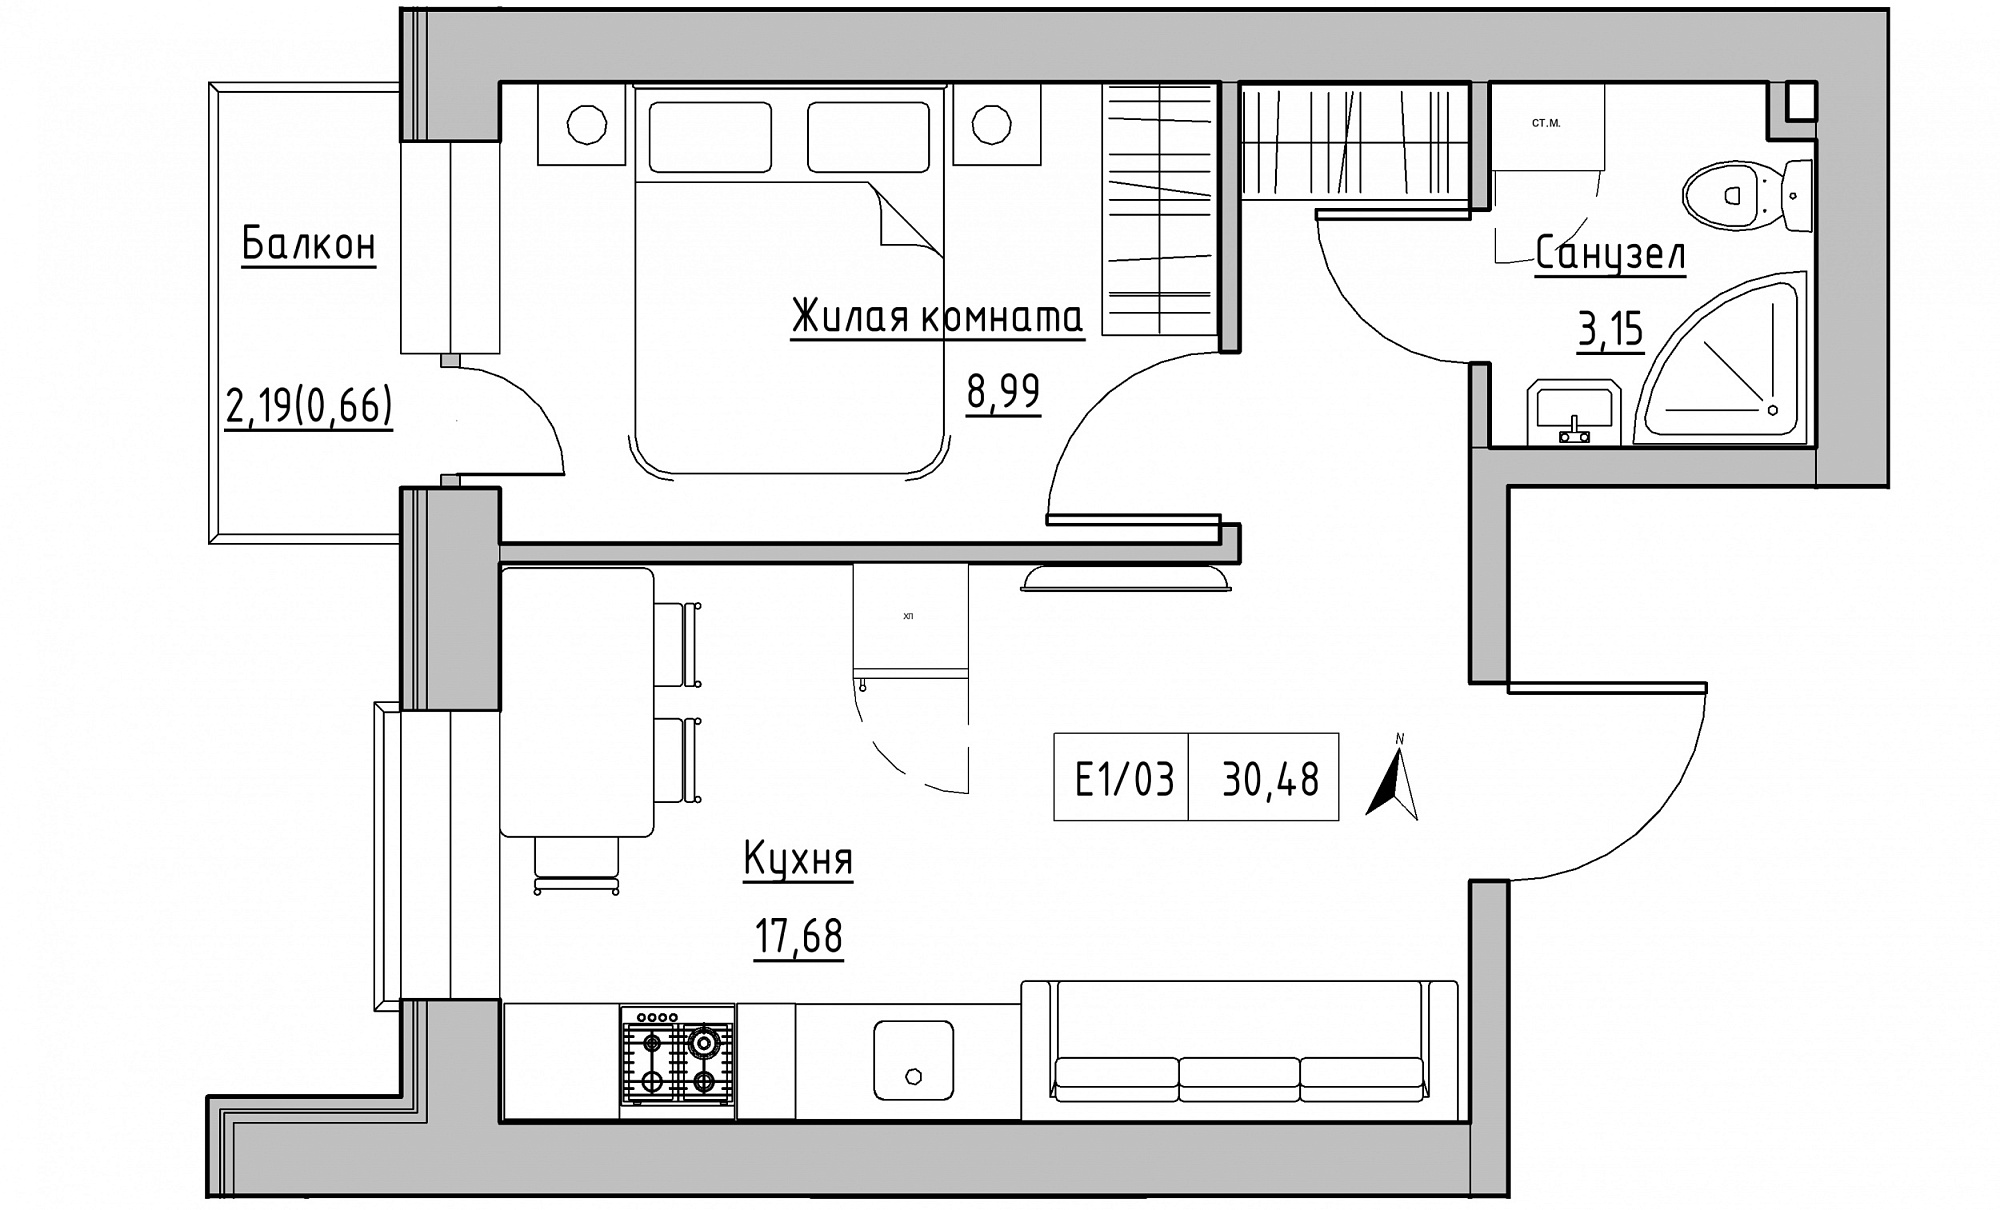 Планування 1-к квартира площею 30.48м2, KS-015-02/0003.